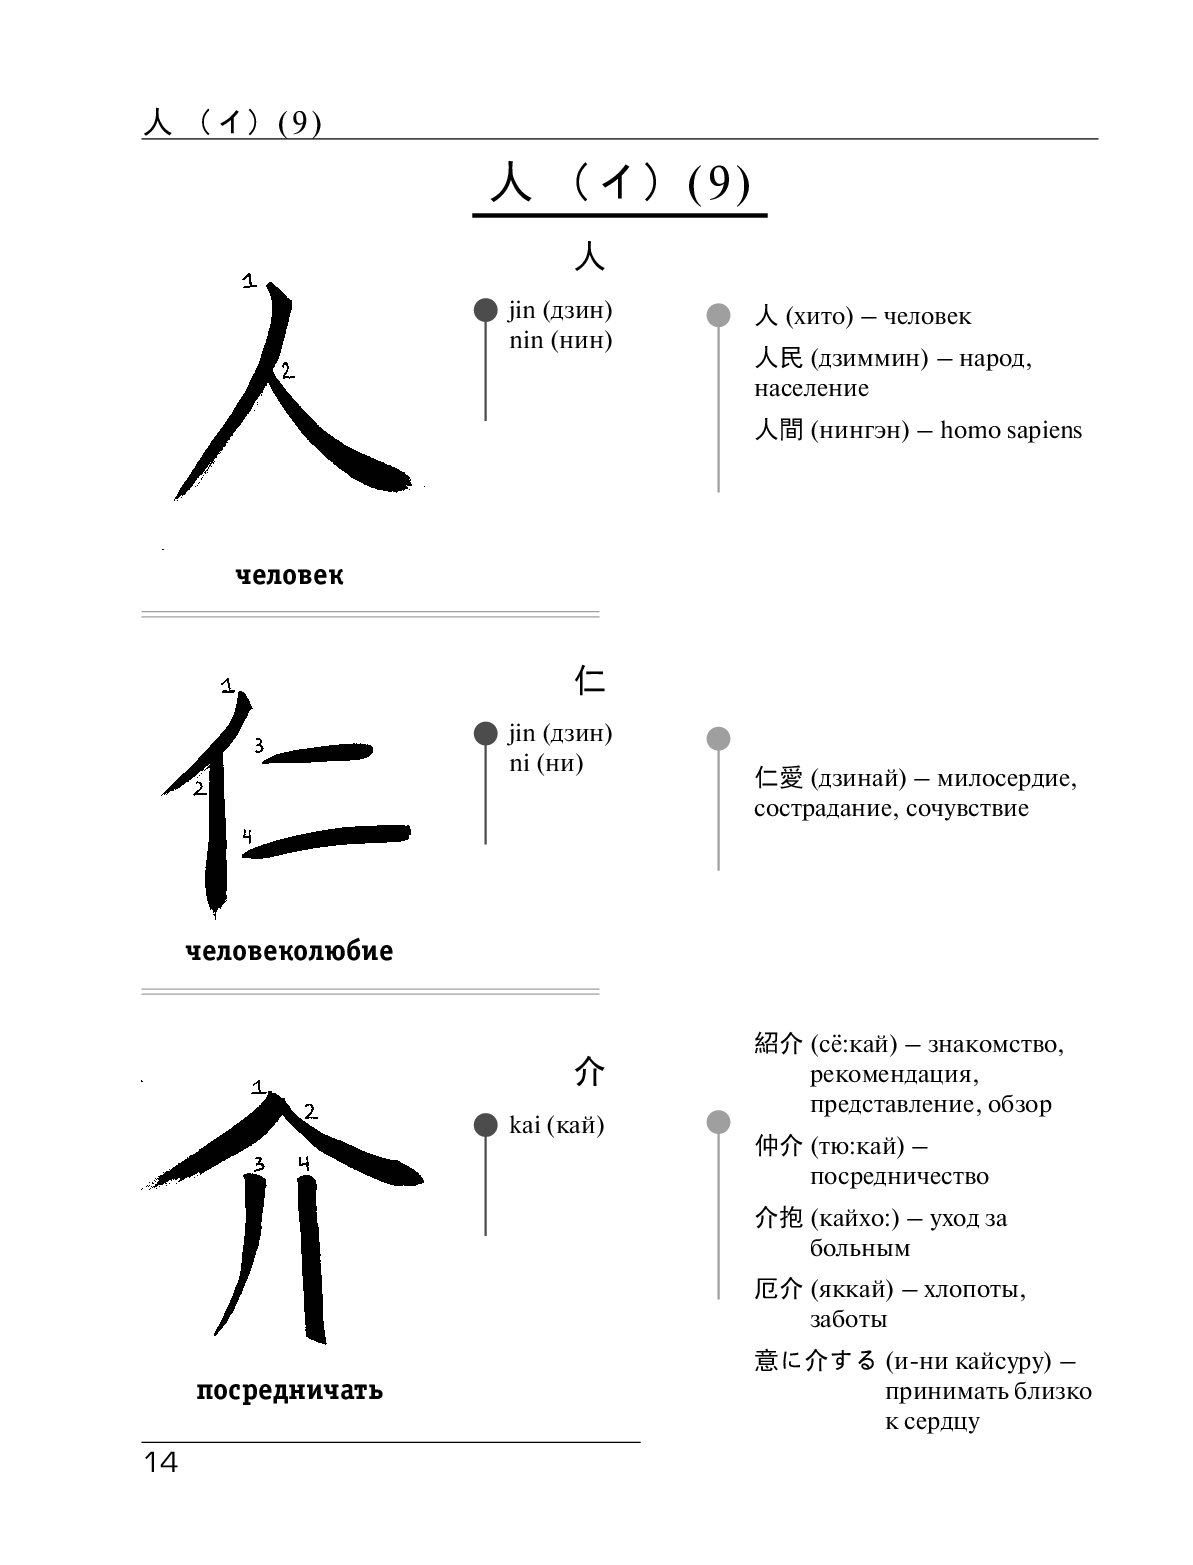 Примеры иероглифов. Кандзи японская основные иерогли. Японские слова в 1 иероглиф. Иероглифы и их значение. Китайские иероглифы в японском языке.